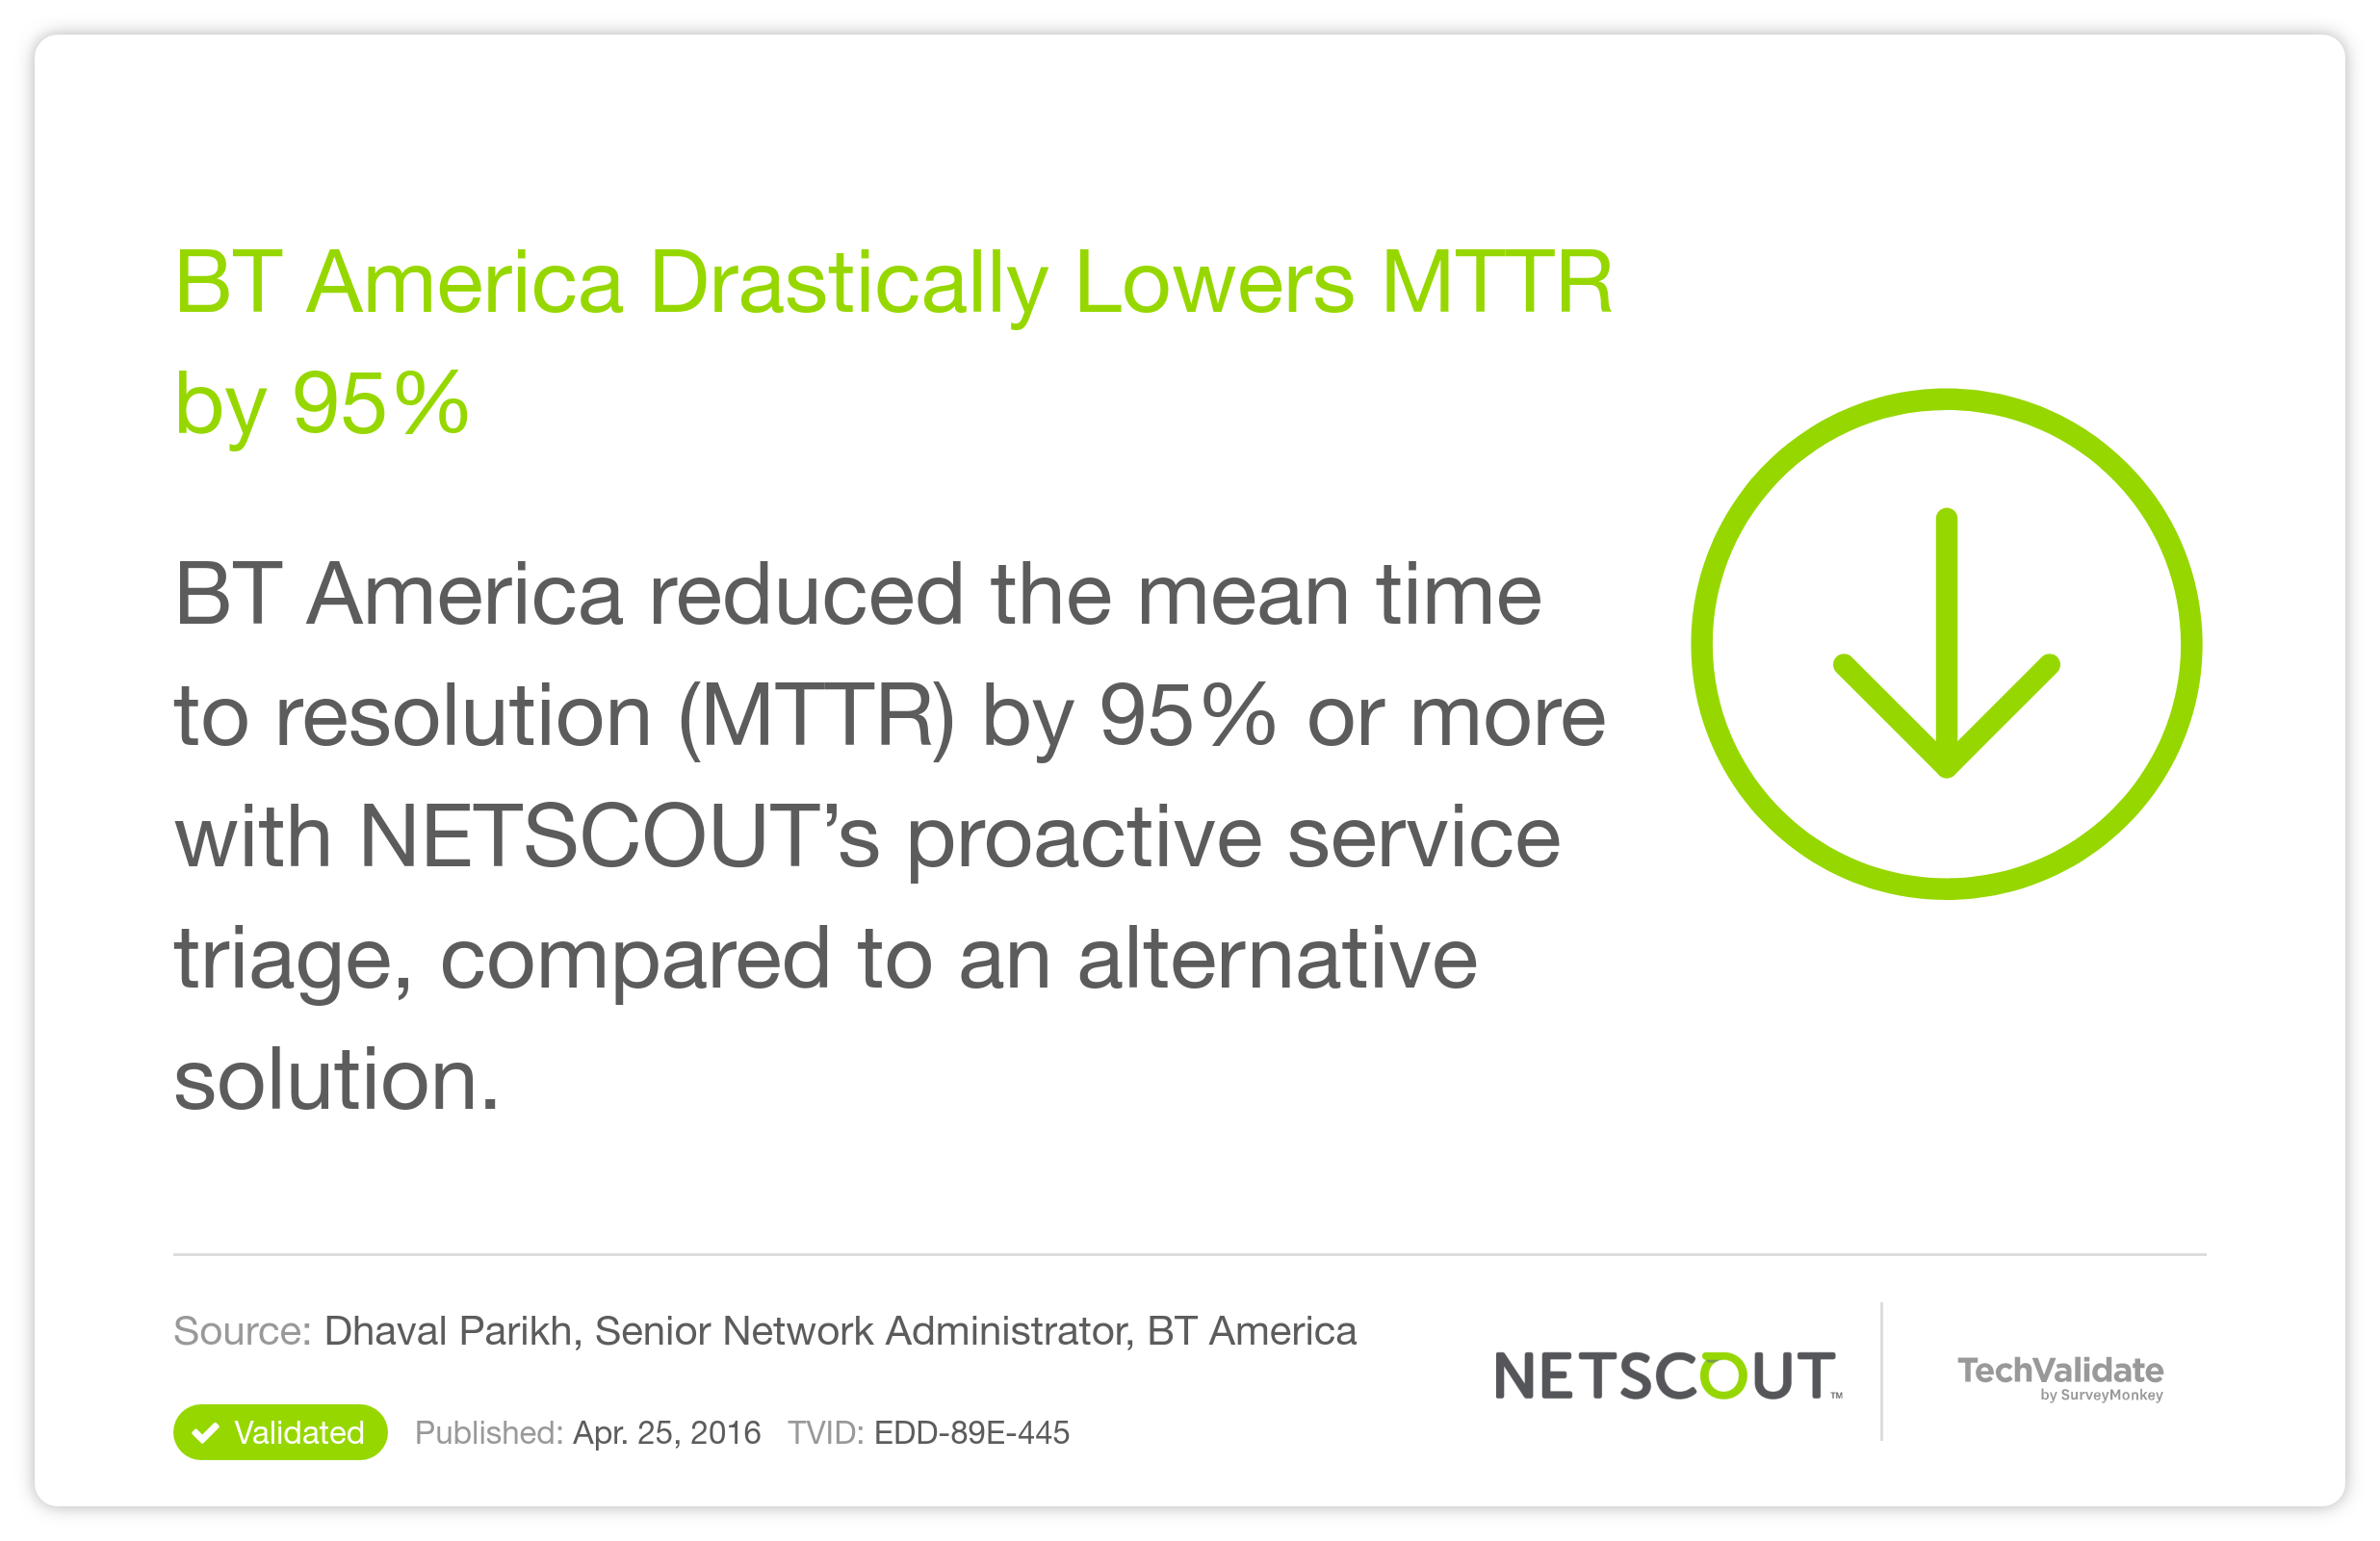 BT America Drastically Lowers MTTR by 95%